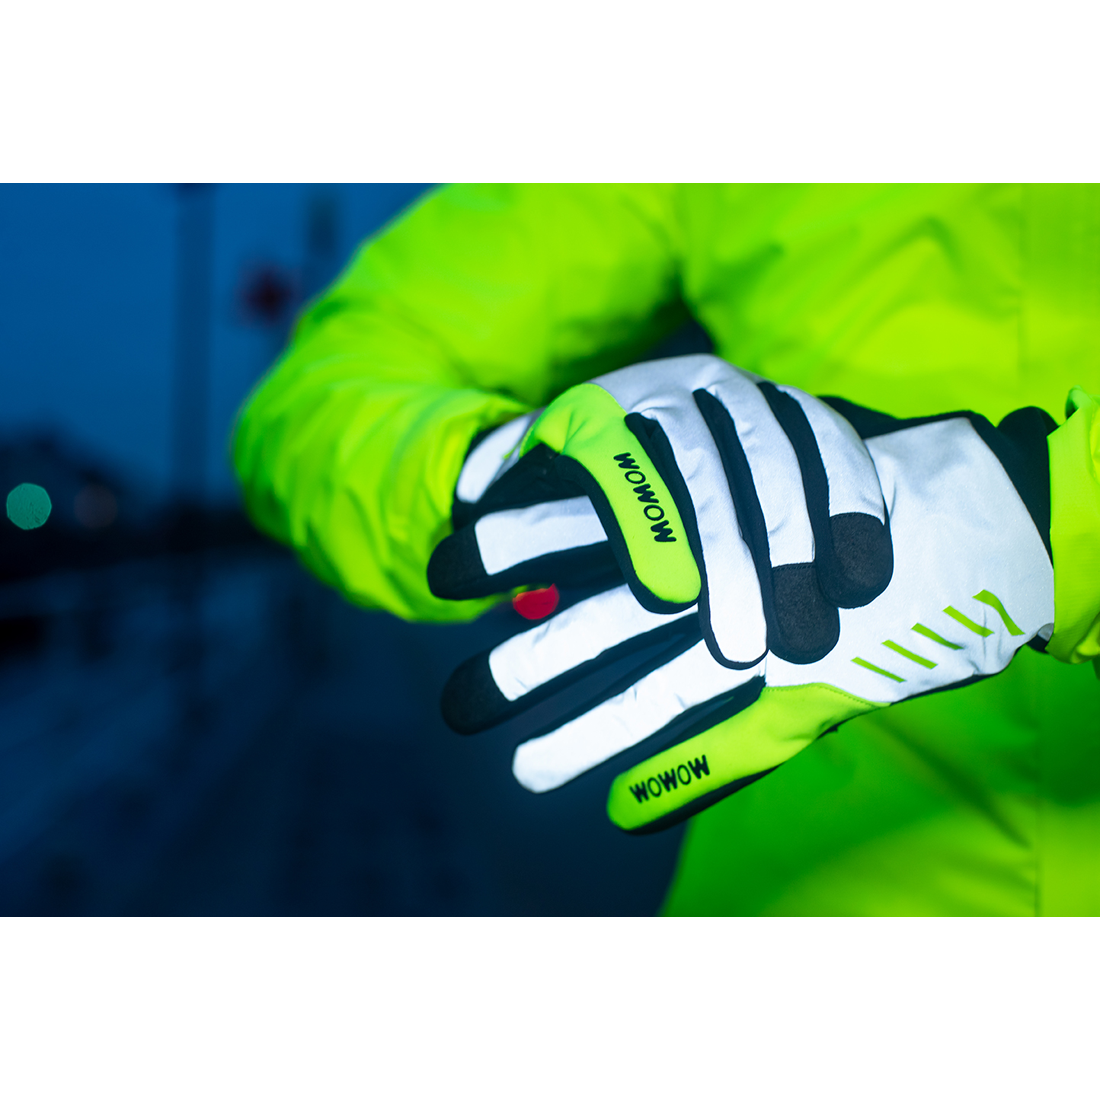 NIGHT STROKE, bei Garage/Velos-Motos kaufen Handschuhe, reflektierend Wowow vollständig Allemann